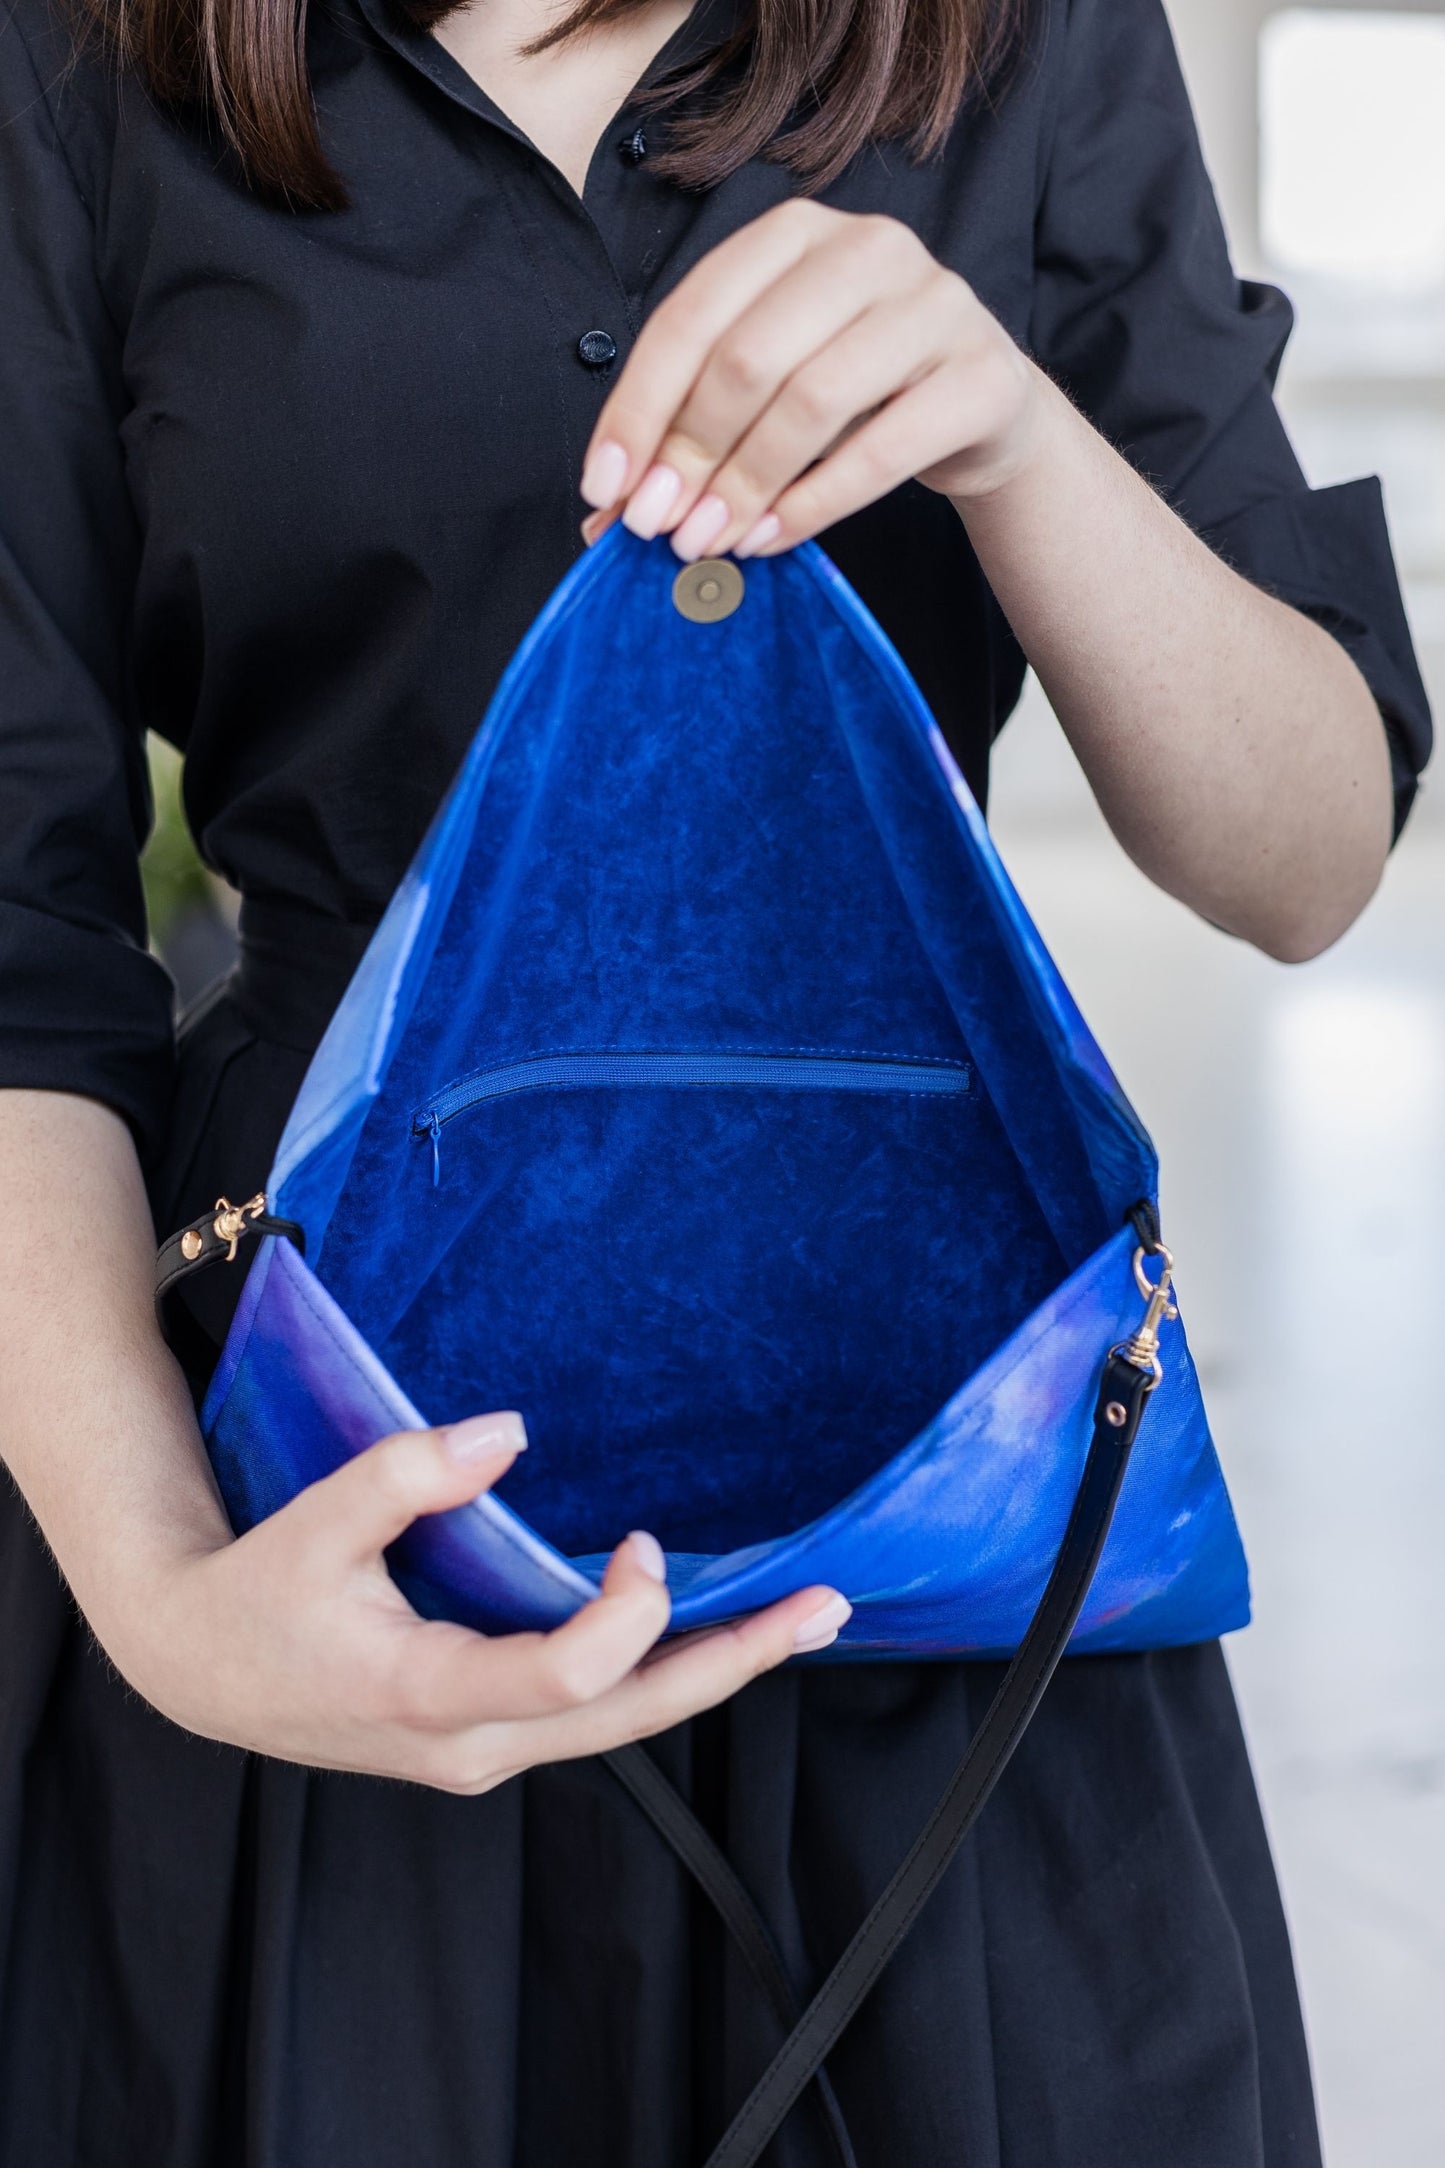 Handbag with cloud printing